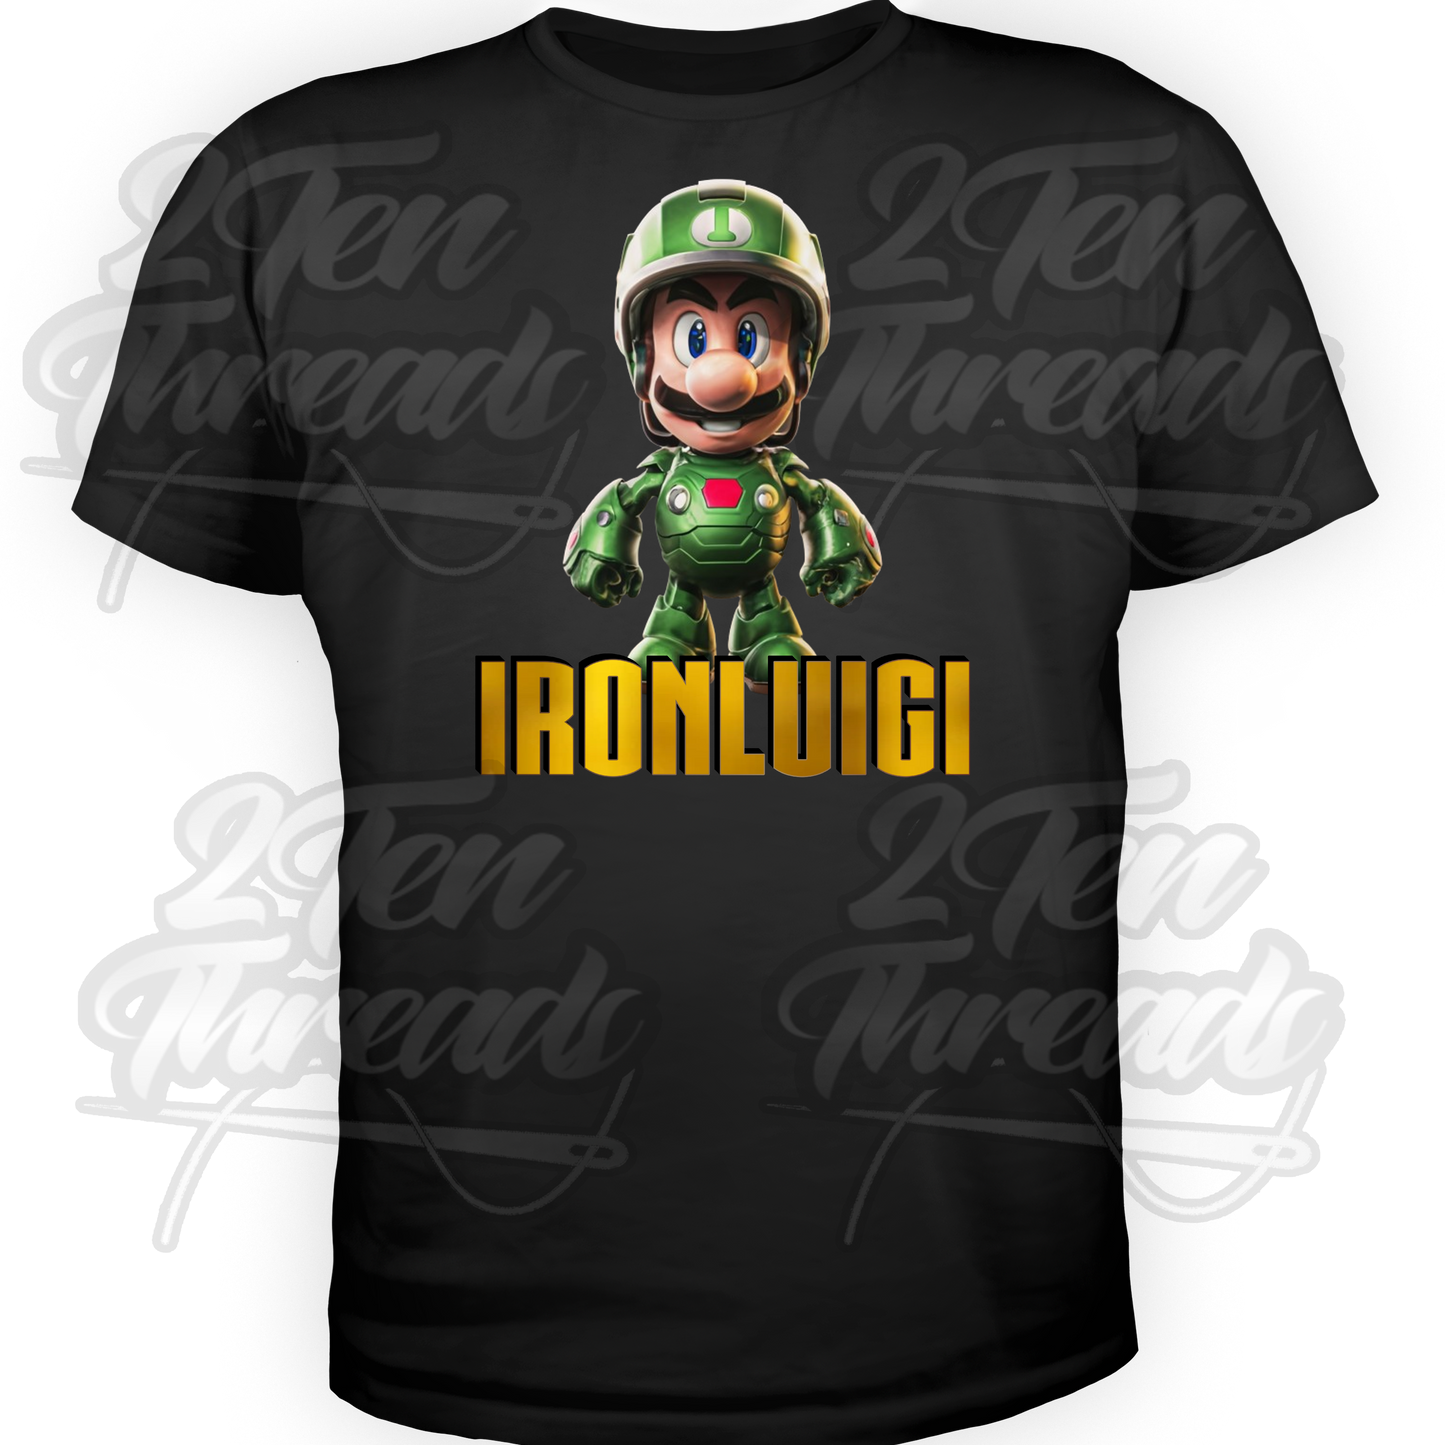 Iron Luigi Shirt